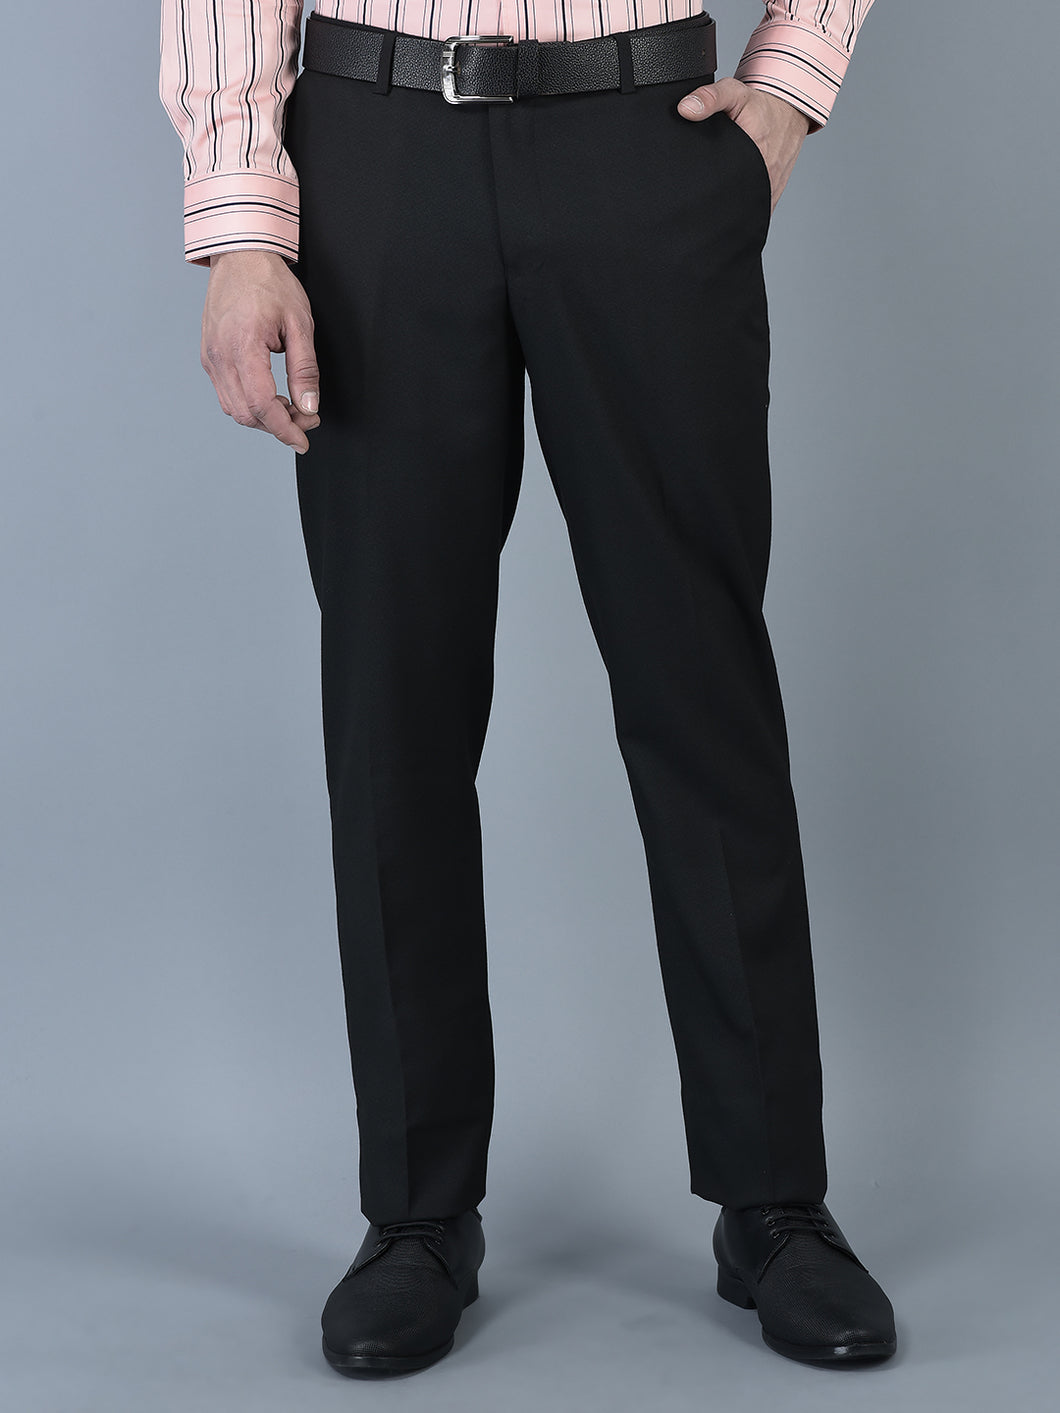 CANOE MEN Formal Trouser  BLACK Color